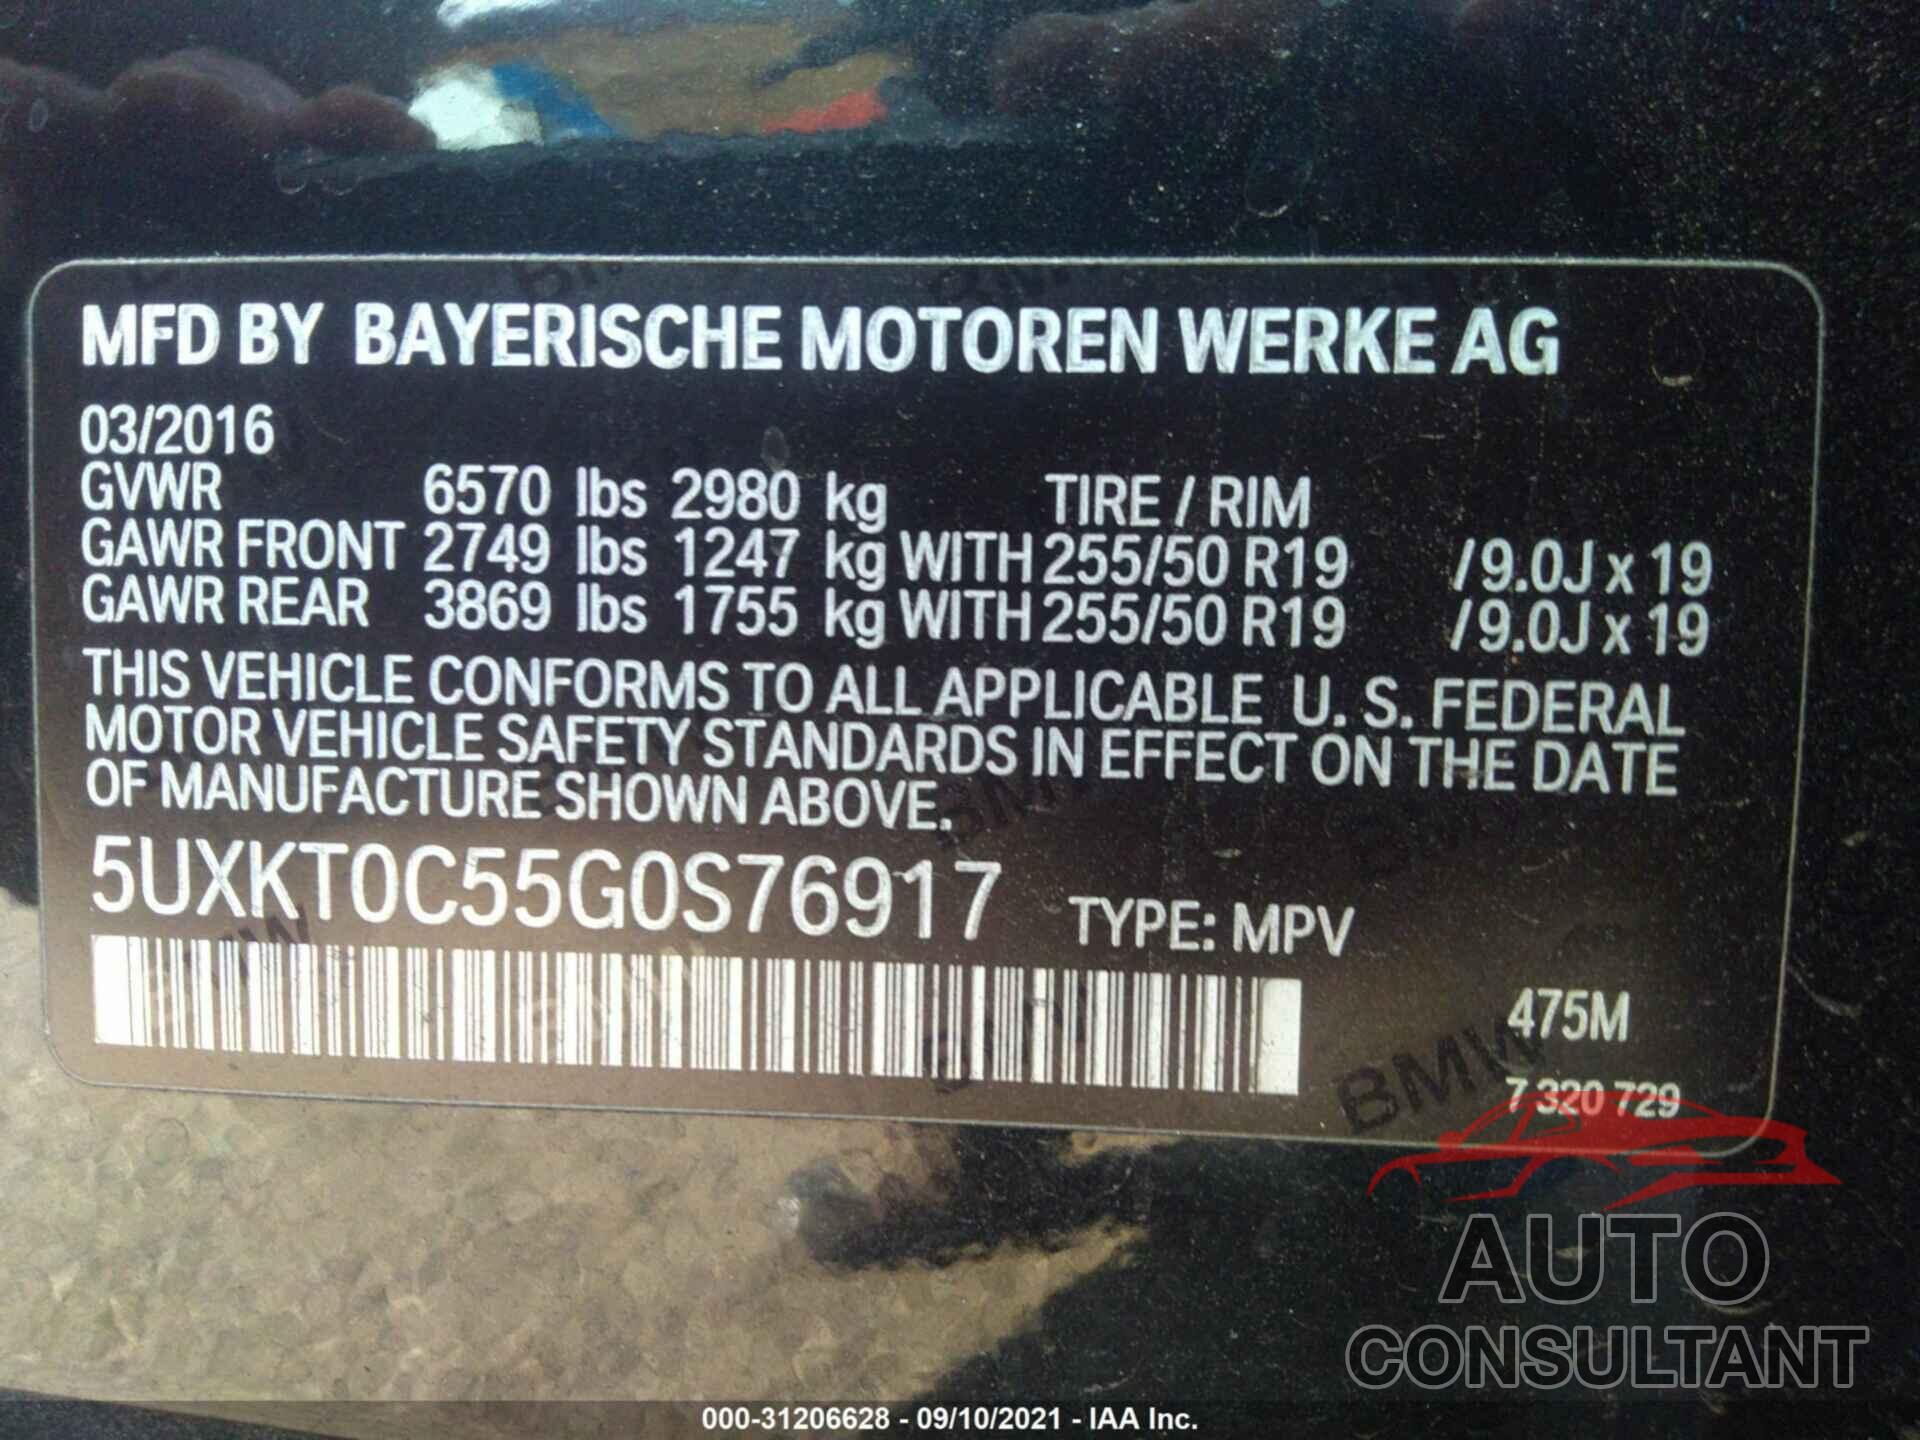 BMW X5 EDRIVE 2016 - 5UXKT0C55G0S76917